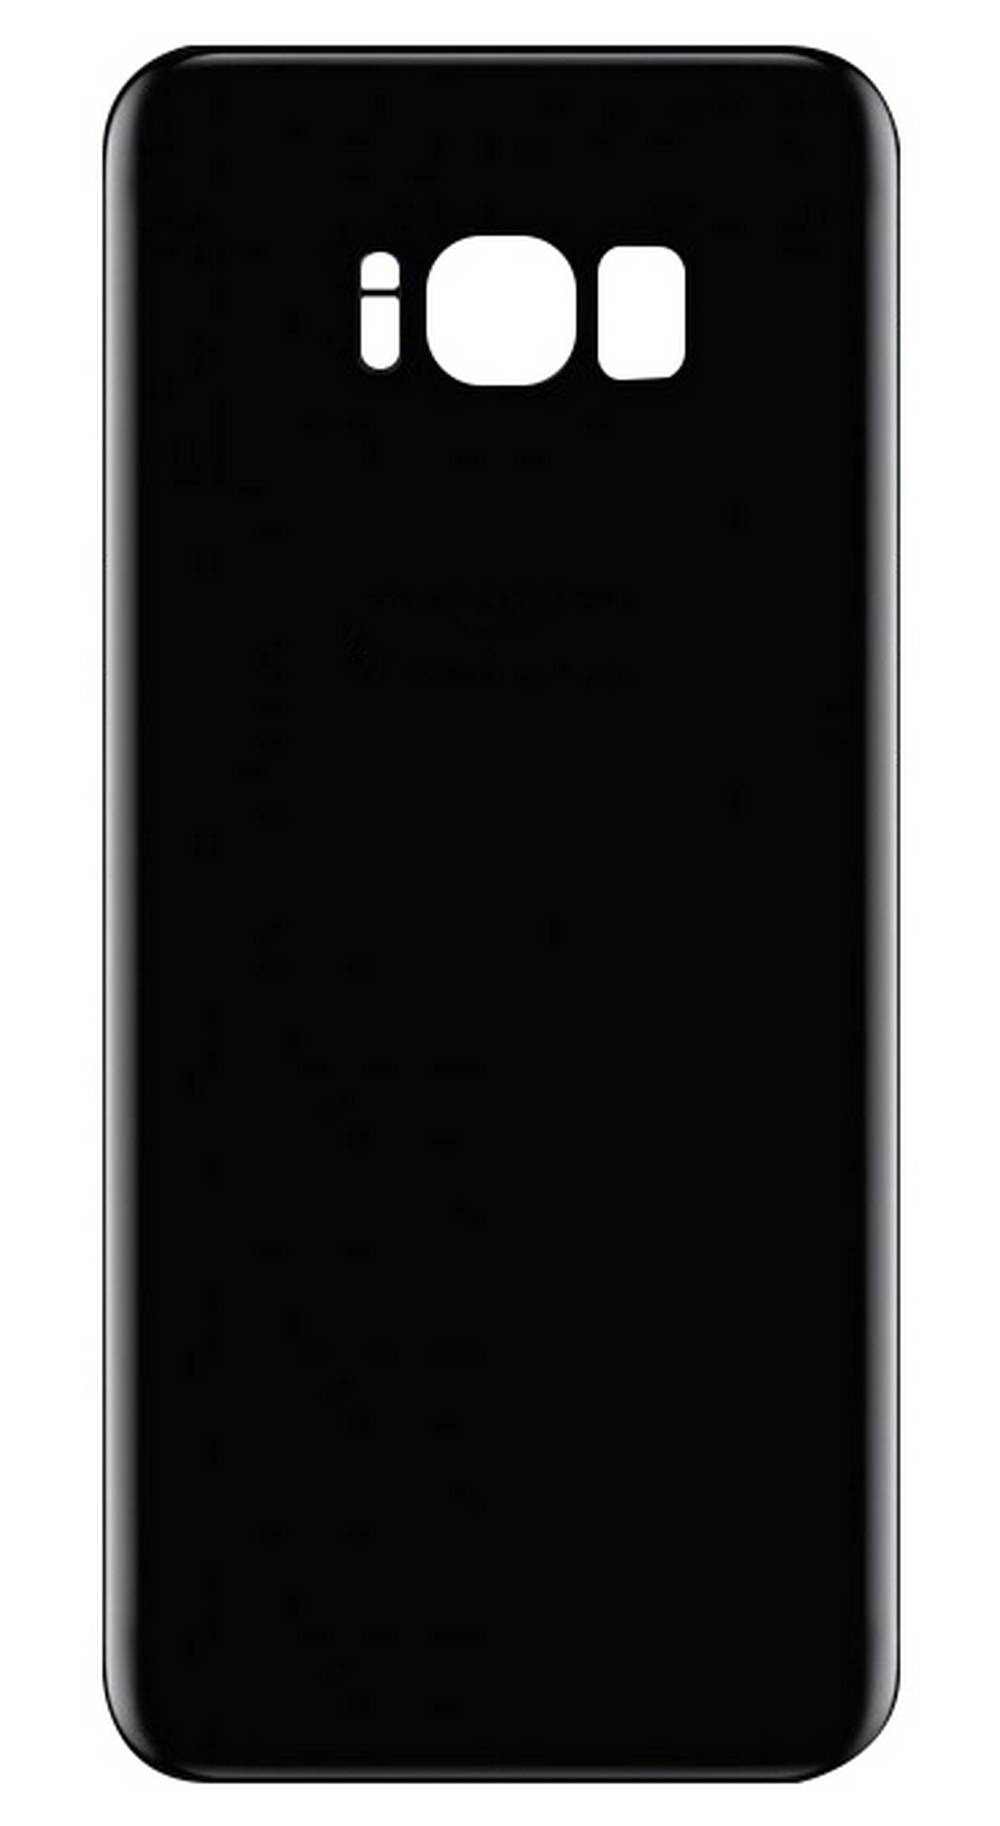 Καπάκι Μπαταρίας Samsung SM-G955F Galaxy S8+ χωρίς Τζαμάκι Κάμερας Βιολετί OEM Type A